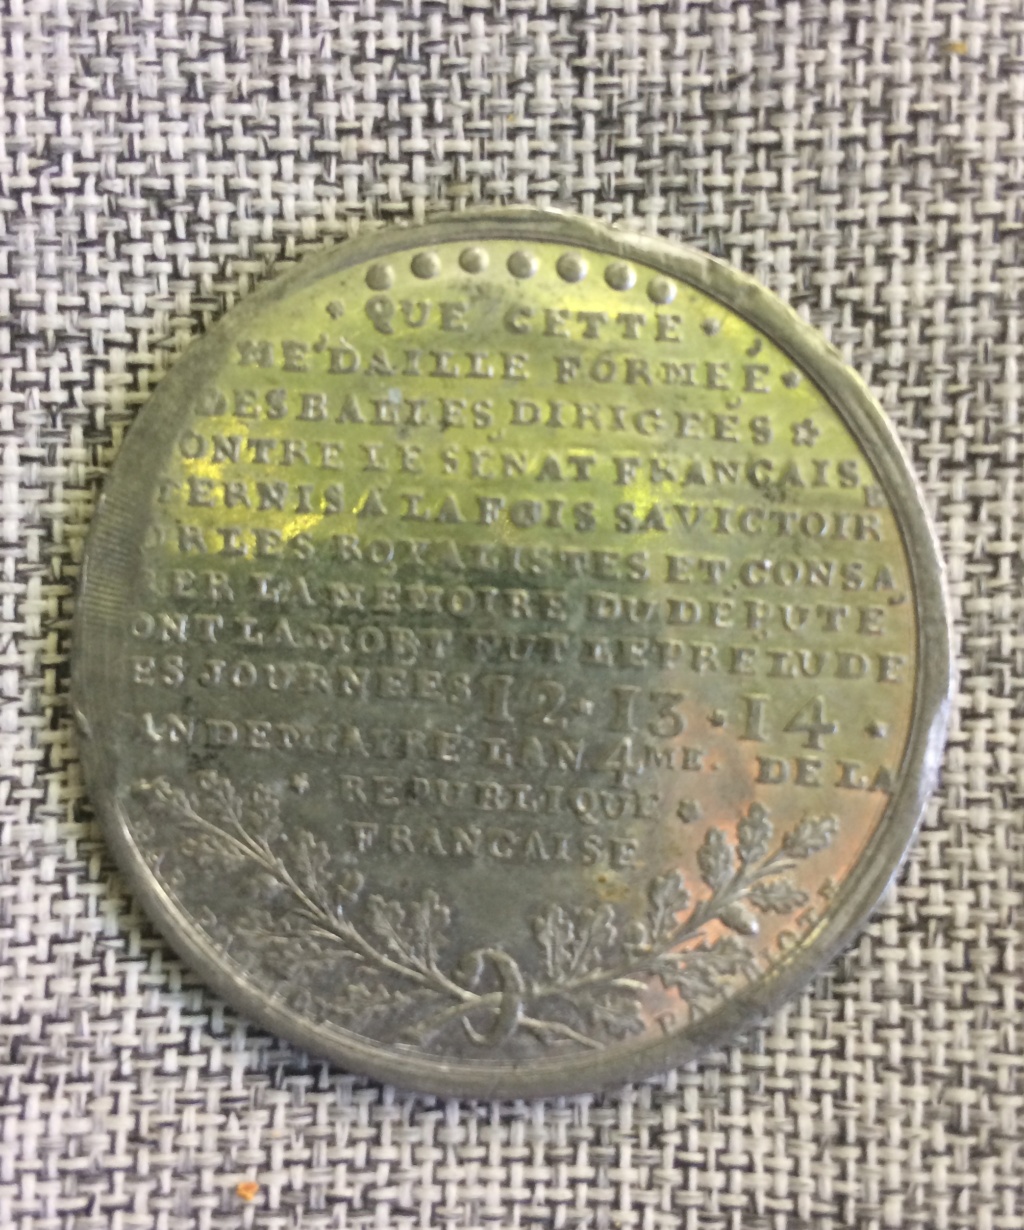 Medaille de Palloy, Adrien Tellier 1795 F0a0ed10